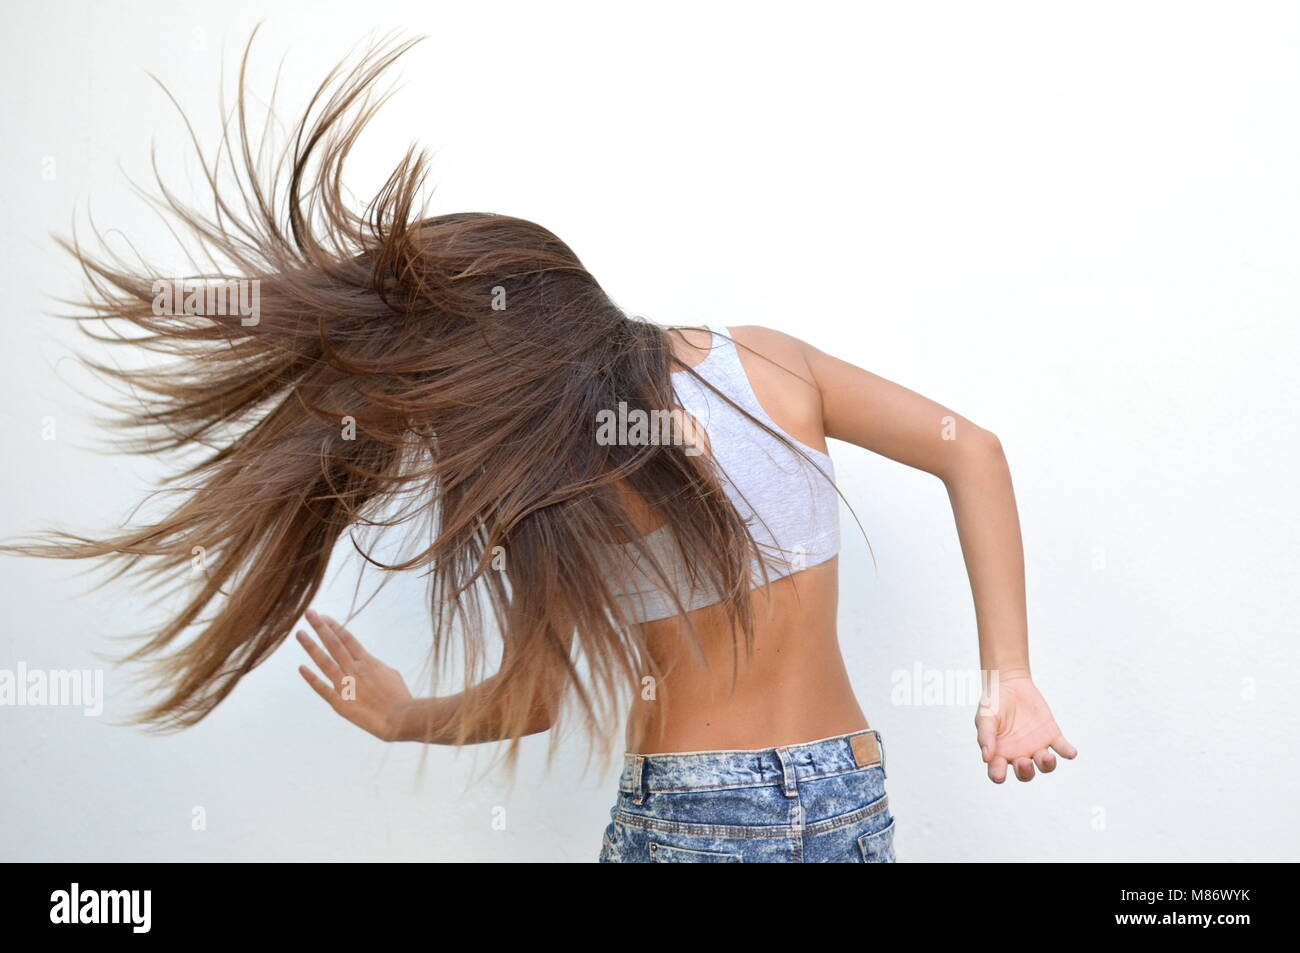 Adolescente bailando y sacudiendo su cabello Foto de stock